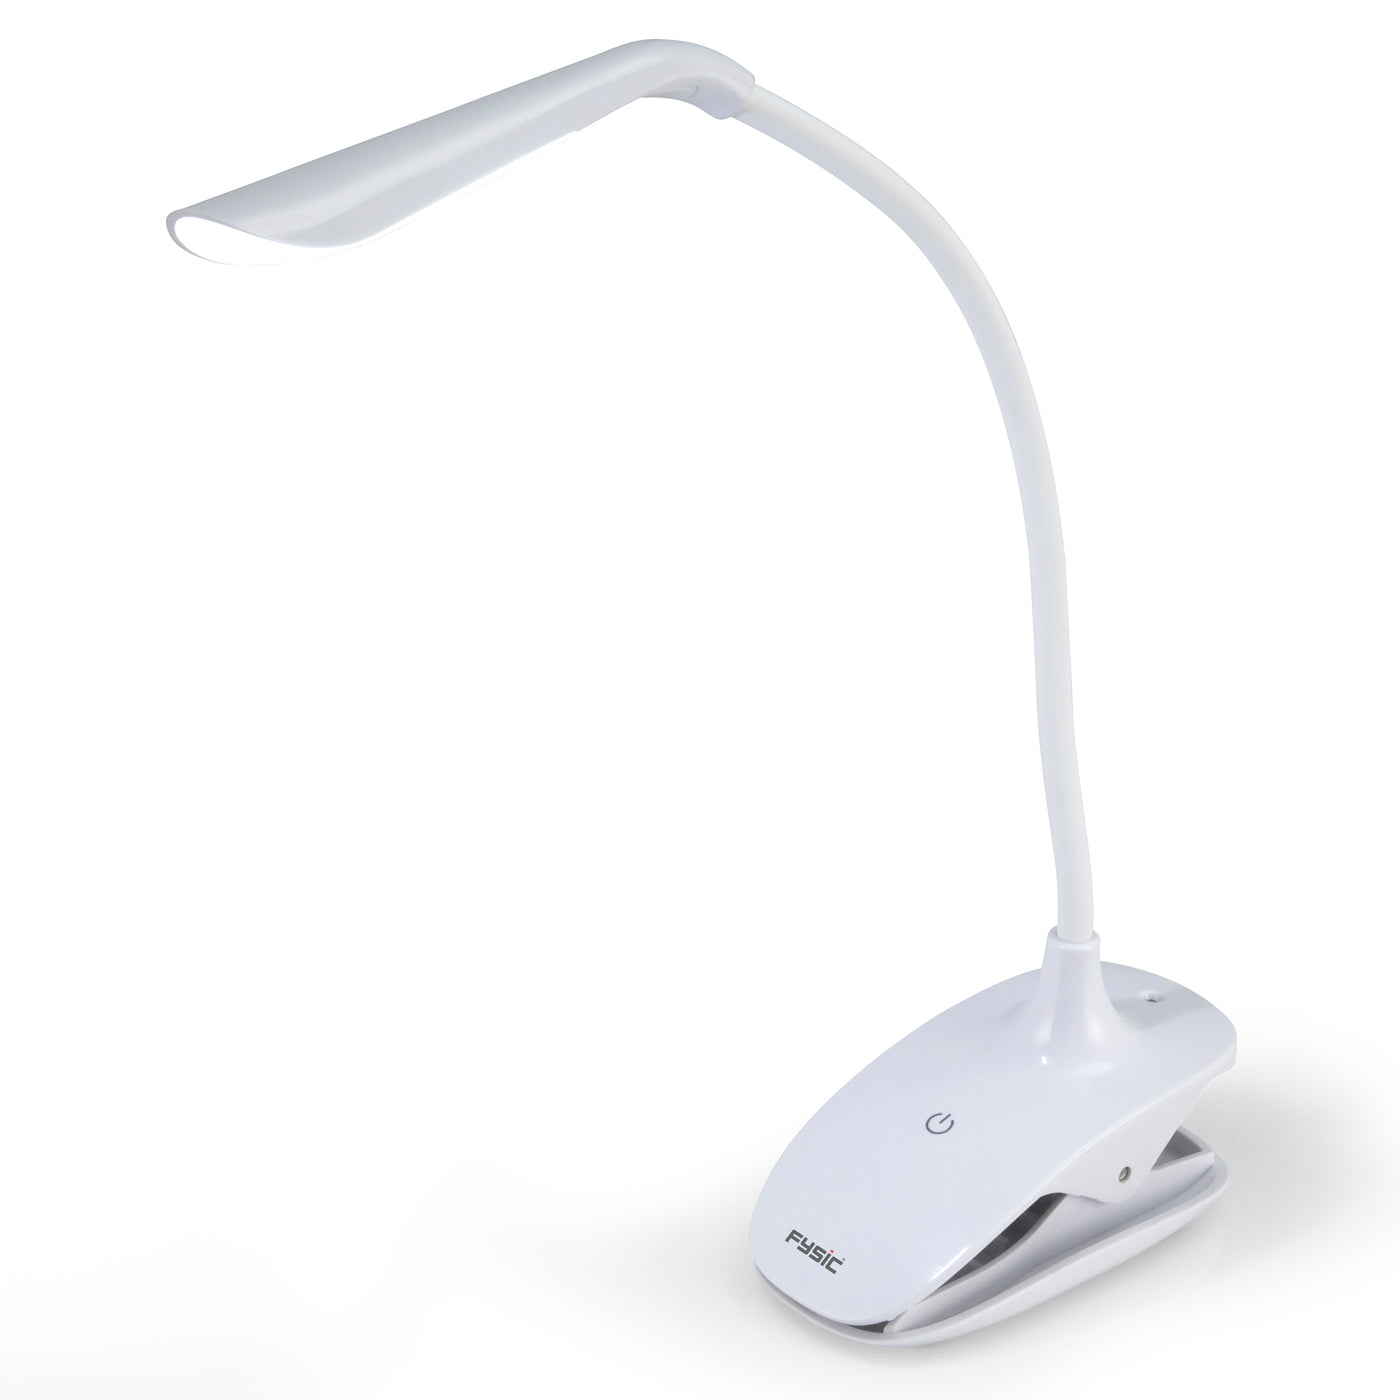 Bezet aardolie accu Fysic FL-11 | Oplaadbare LED lamp met klem | Fysic.nl